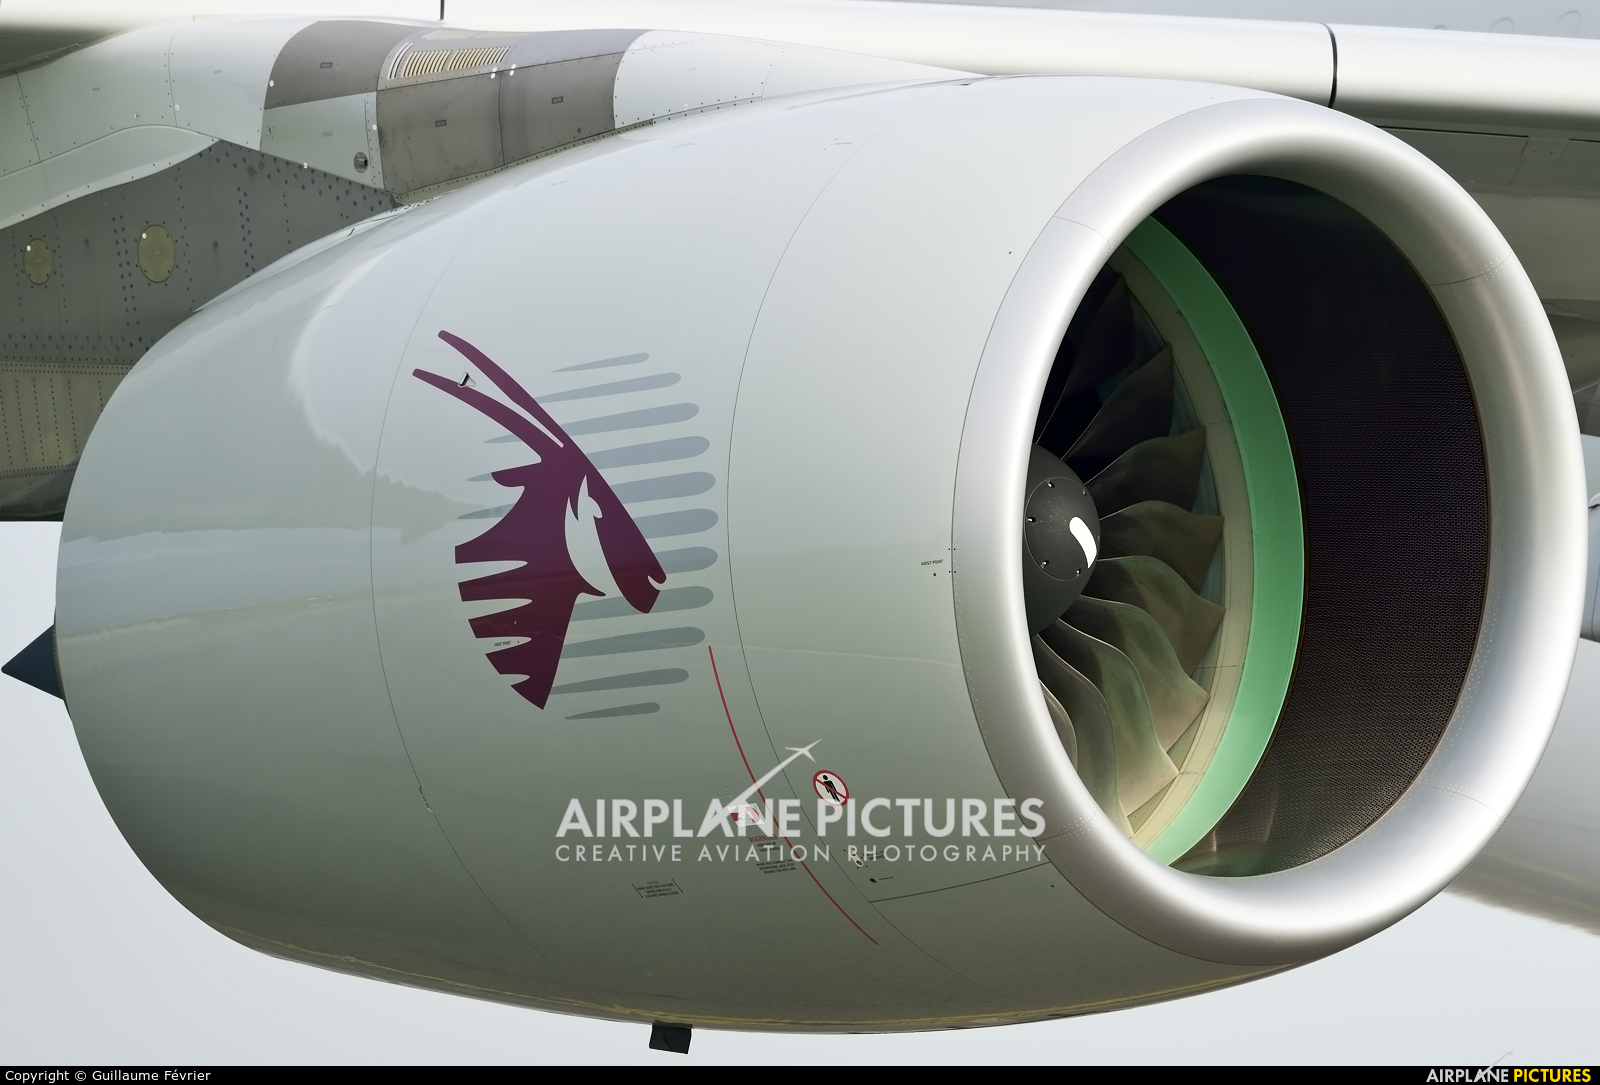 Qatar Airways A7-APA aircraft at Paris - Charles de Gaulle